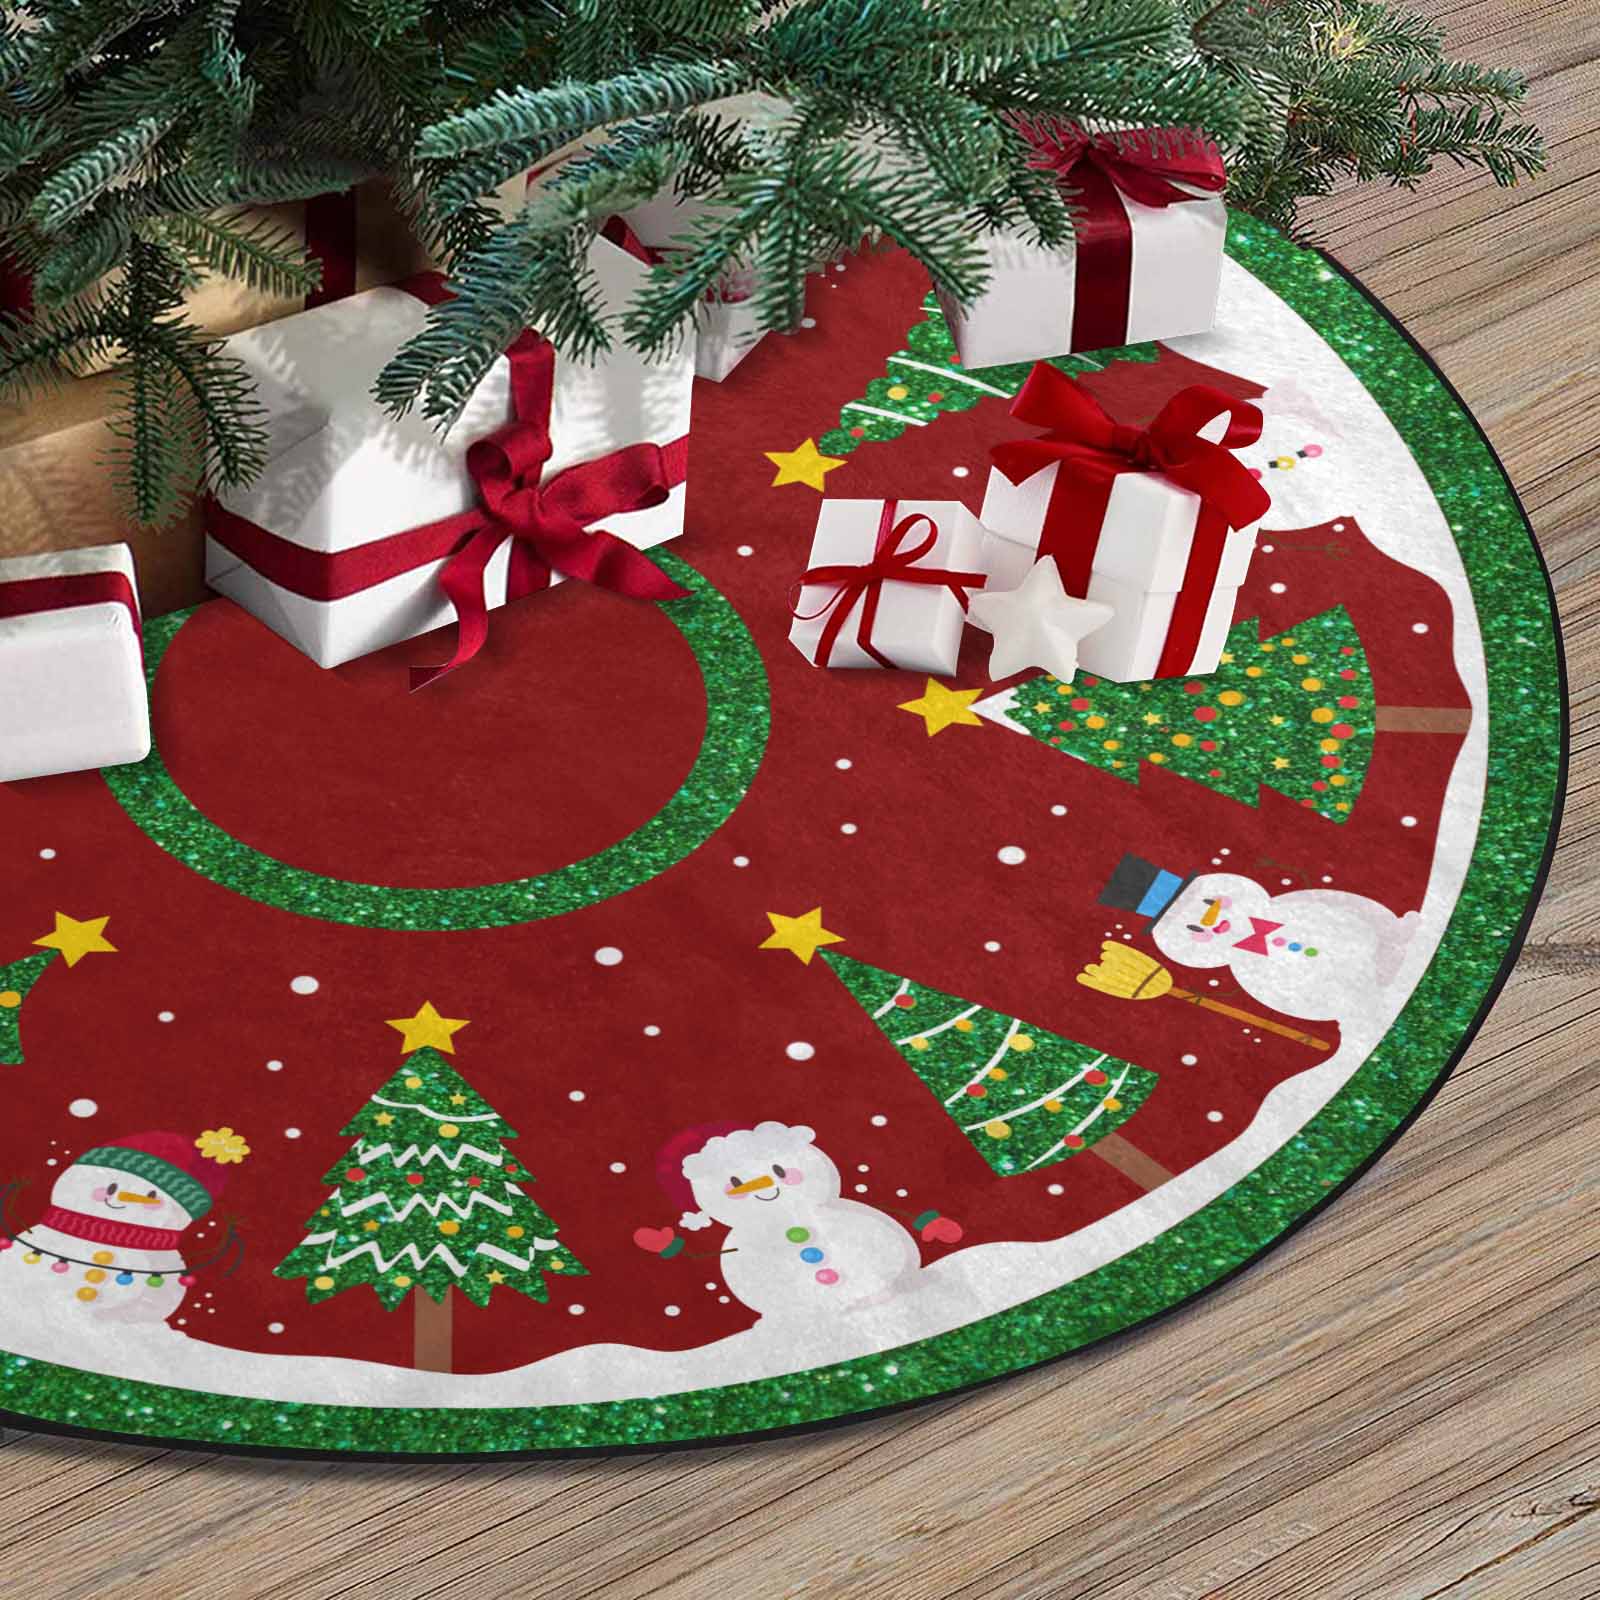 Christmas Tree Skirt, Decoration For Christmas Tree, Snowman And Christmas Tree